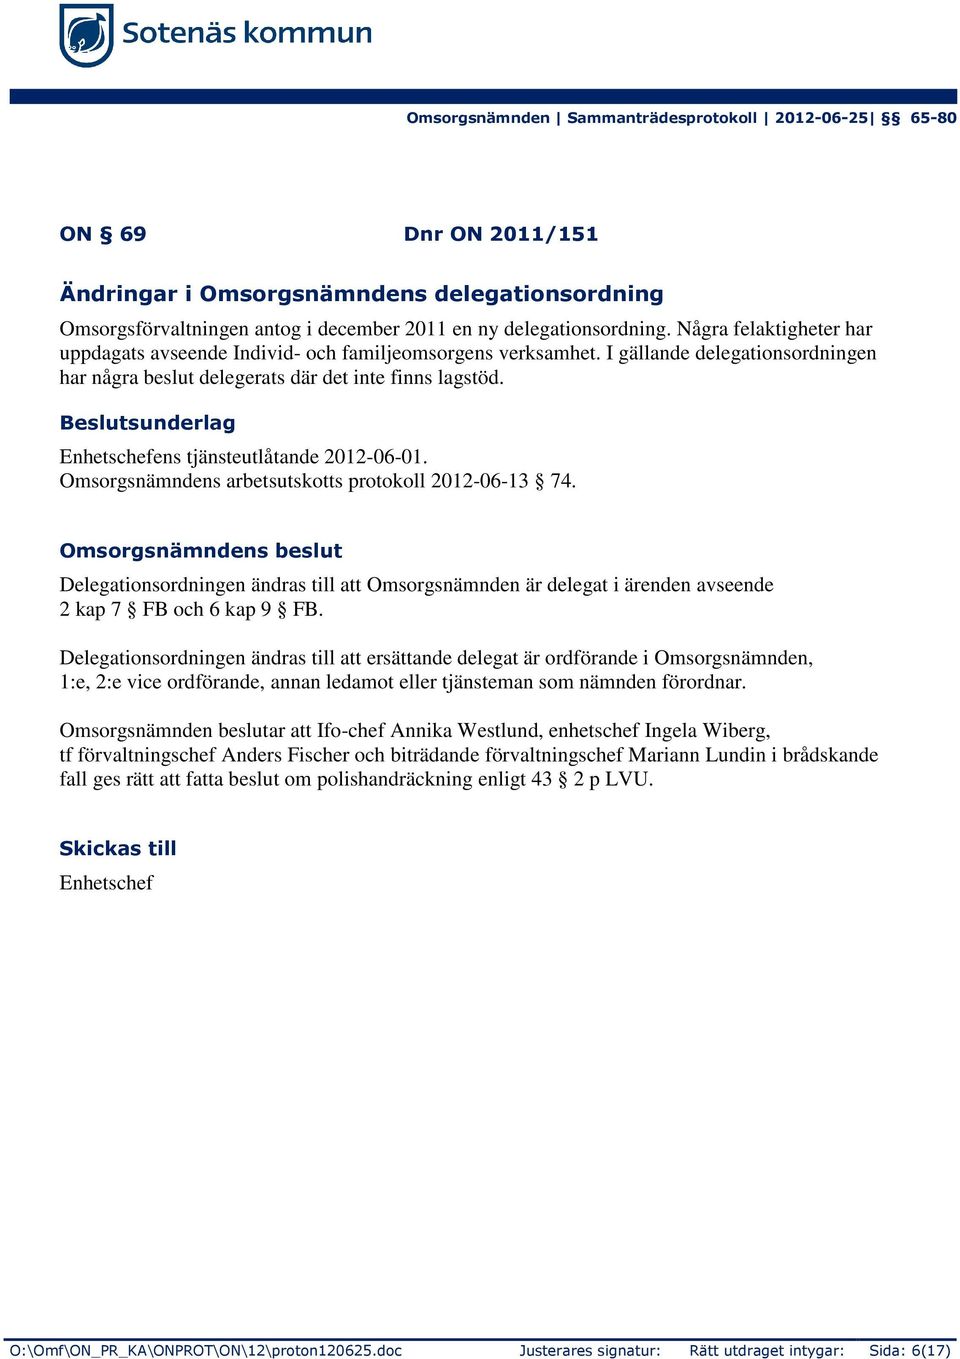 Enhetschefens tjänsteutlåtande 2012-06-01. Omsorgsnämndens arbetsutskotts protokoll 2012-06-13 74.